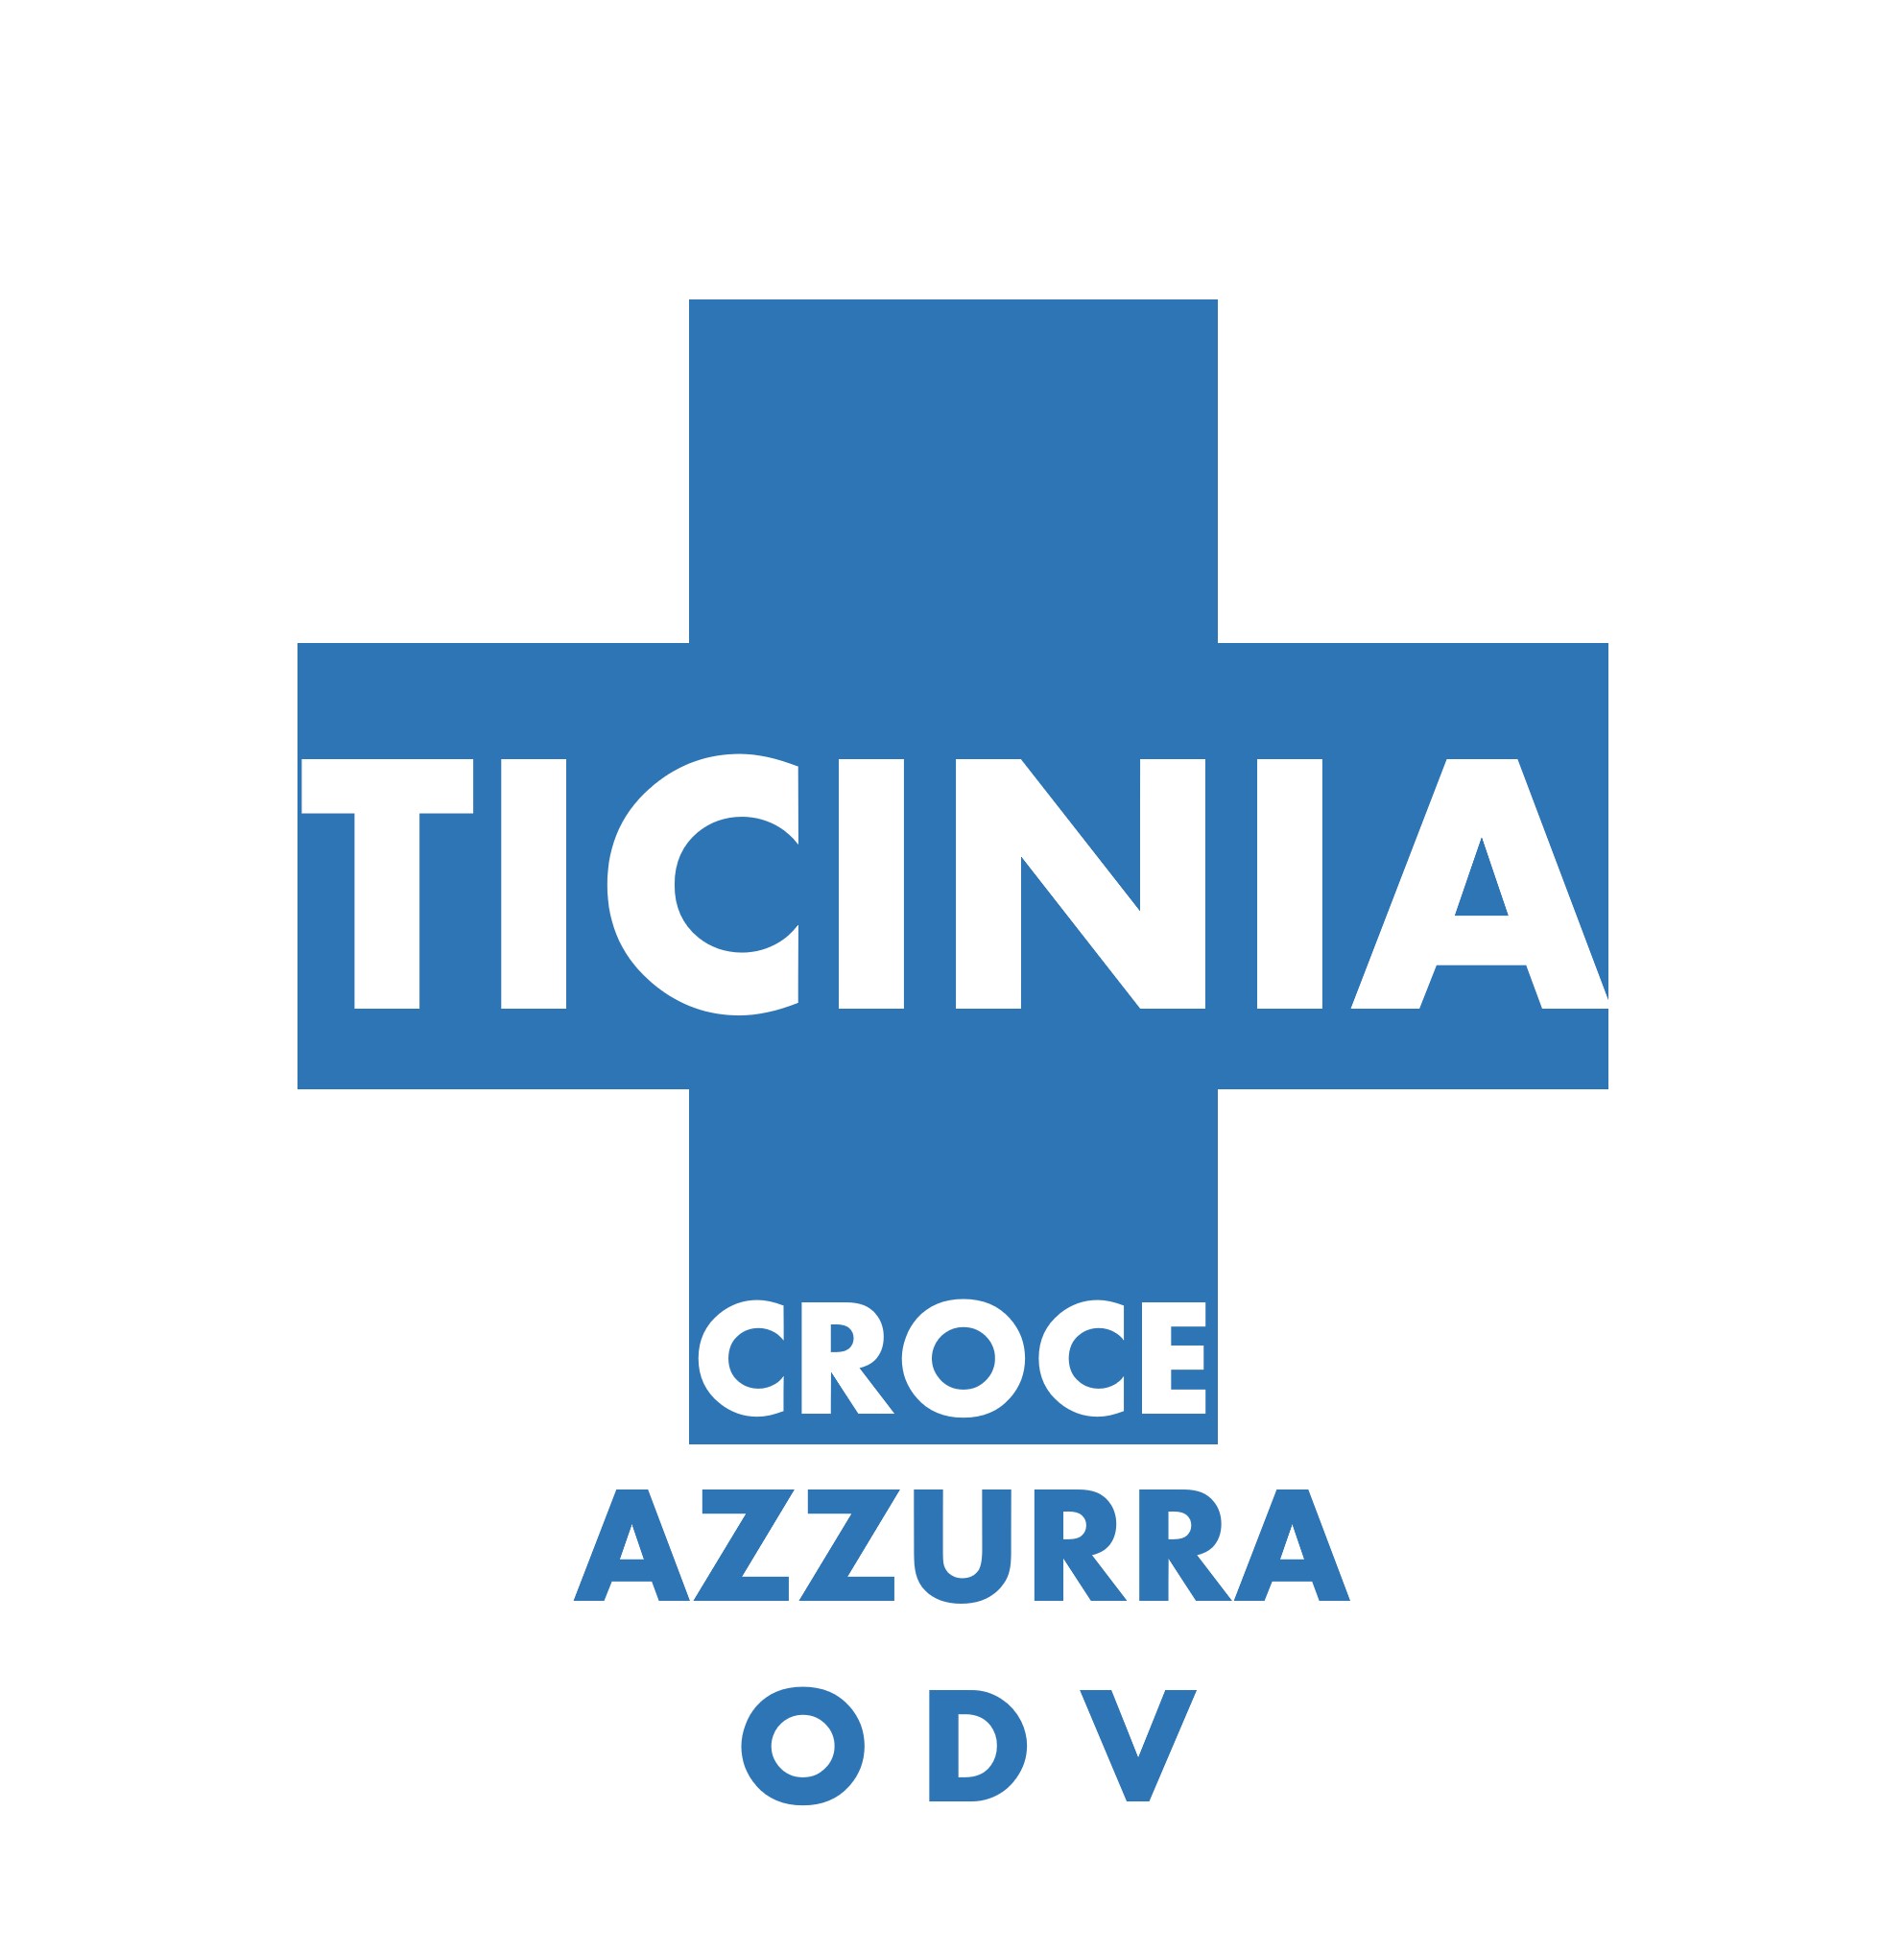 Archivio Storico Croce Azzurra Ticinia - Croce Azzurra Ticinia ODV - 2007 - Opera Ticinia